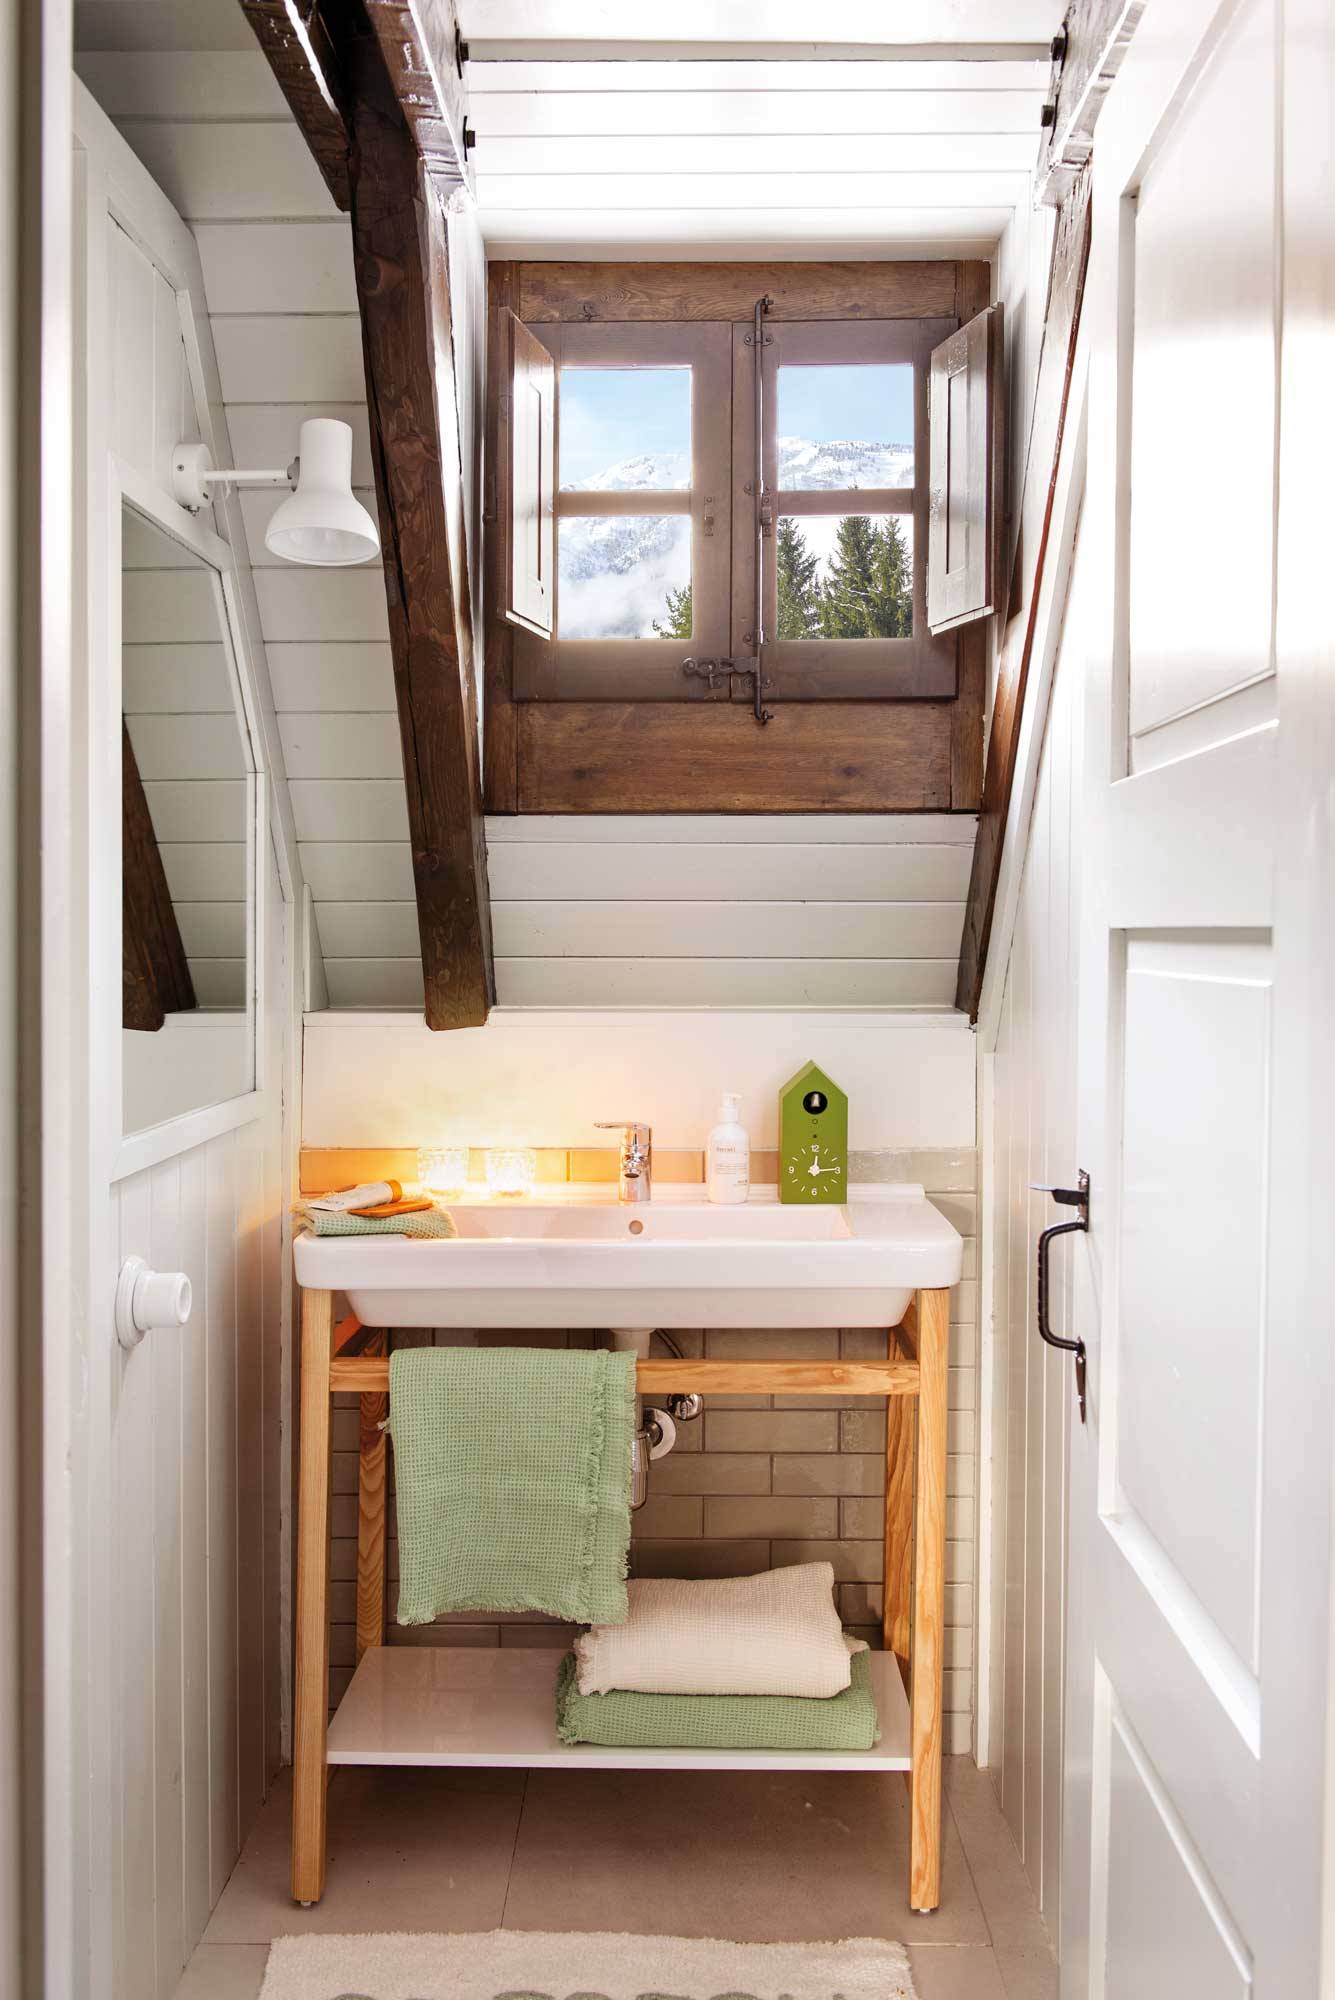 Baño pequeño y estrecho abuhardillado con ventana de madera. 